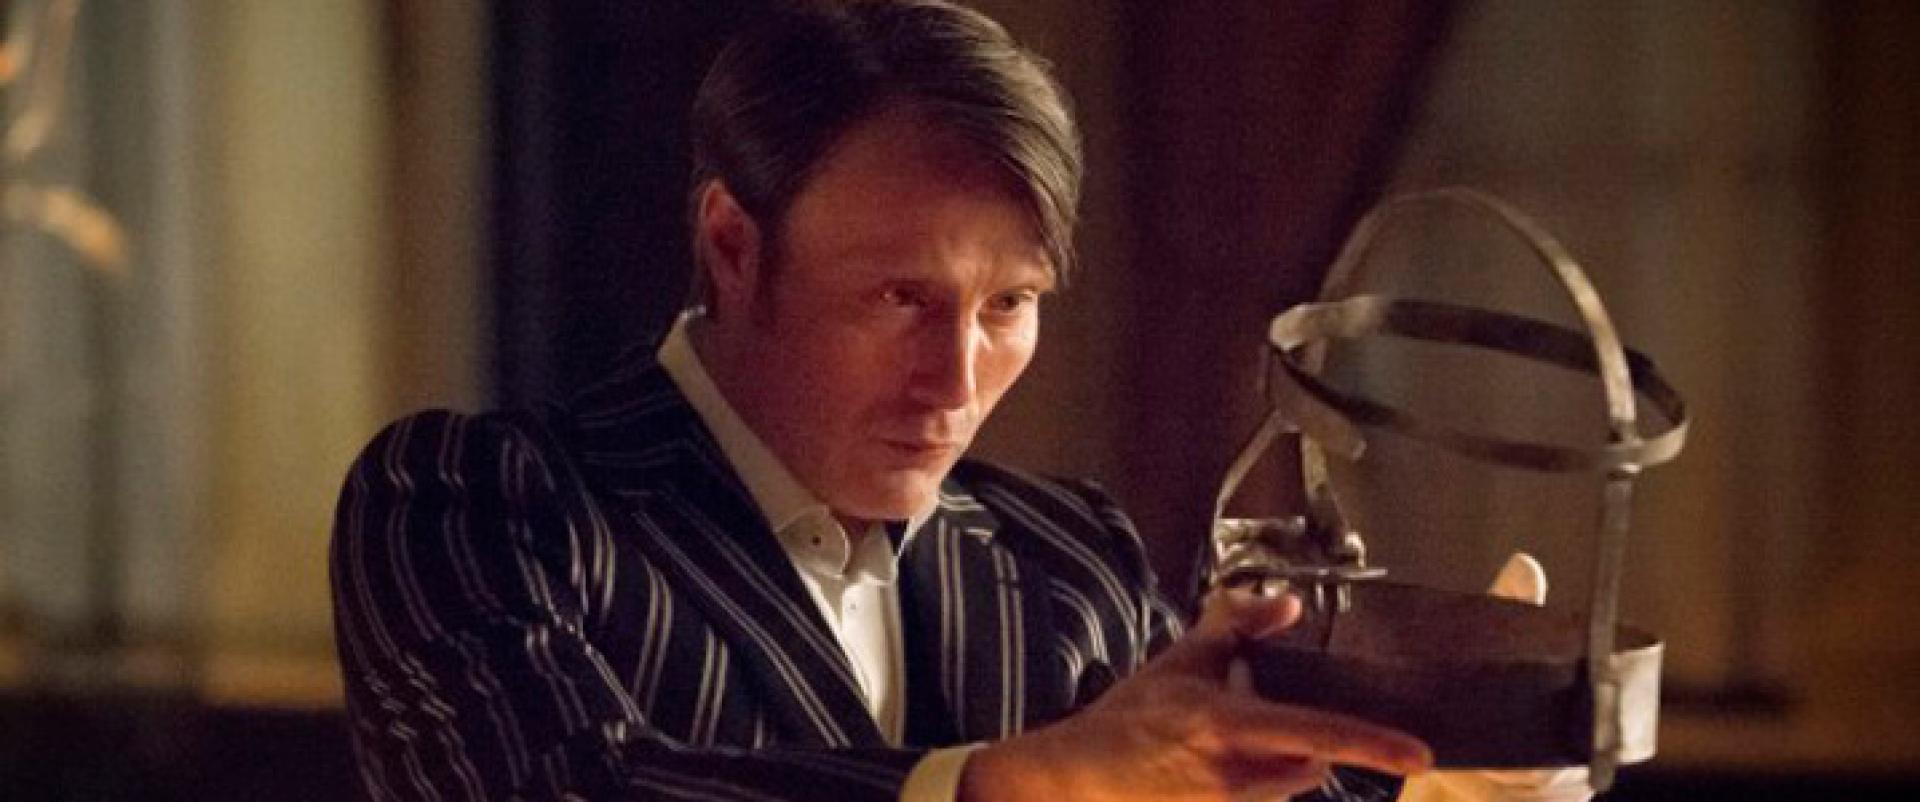 Hannibal: 4. évad helyett egész estés film?